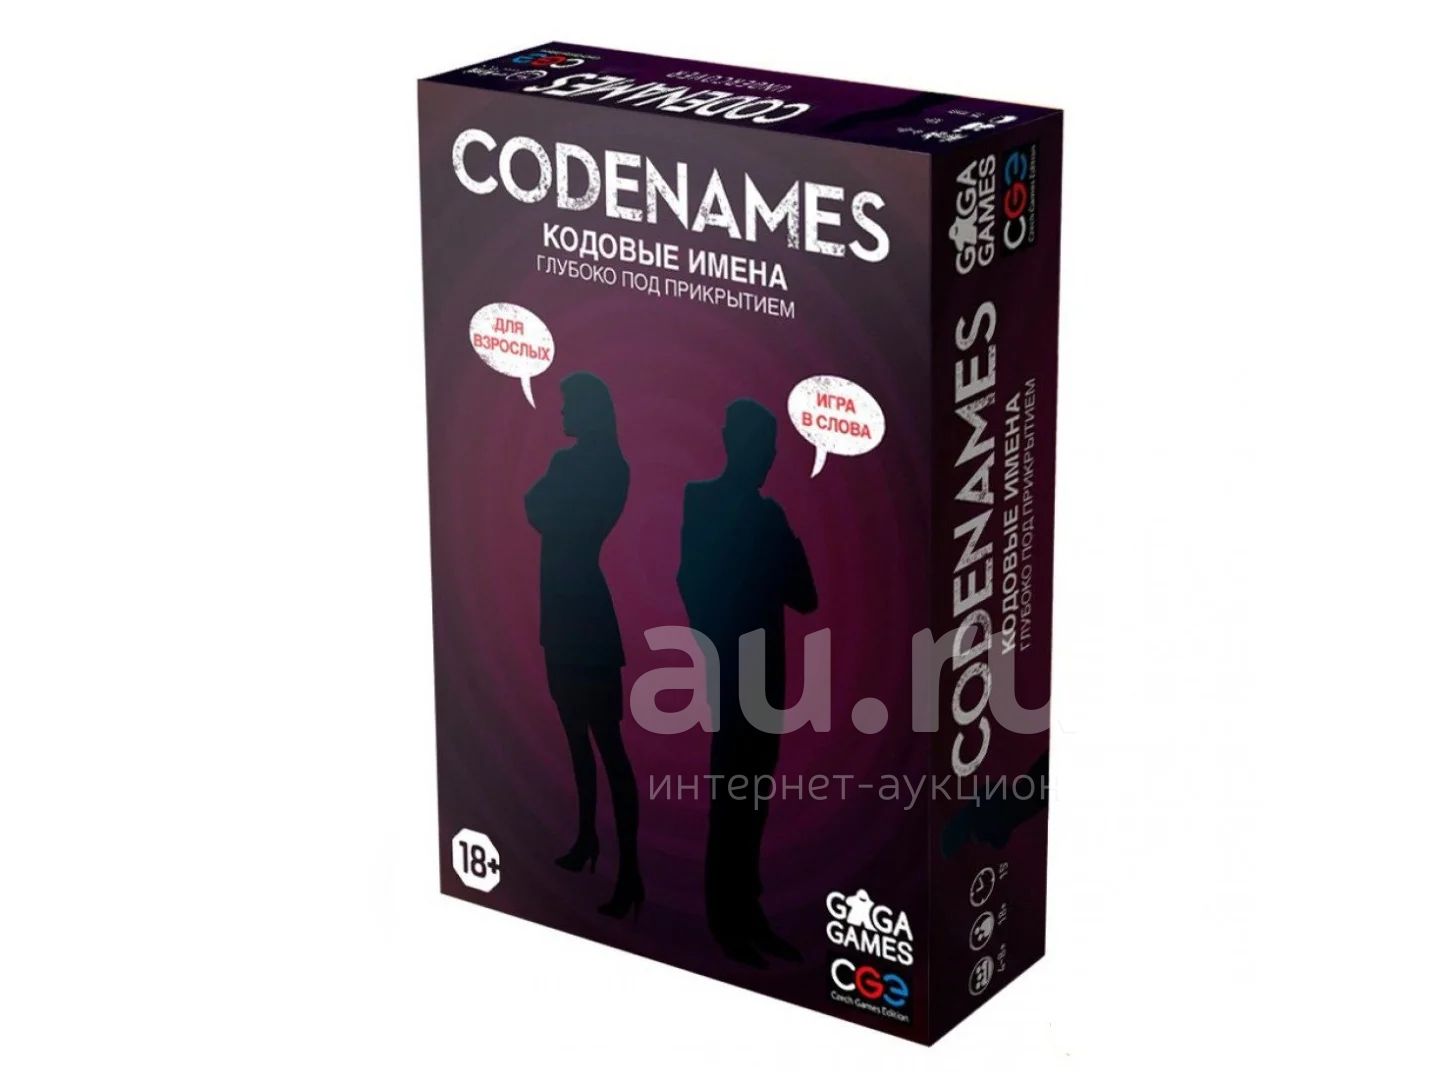 Игра code names. Настольная игра коднеймс. Настольная игра кодовые имена (Codenames).